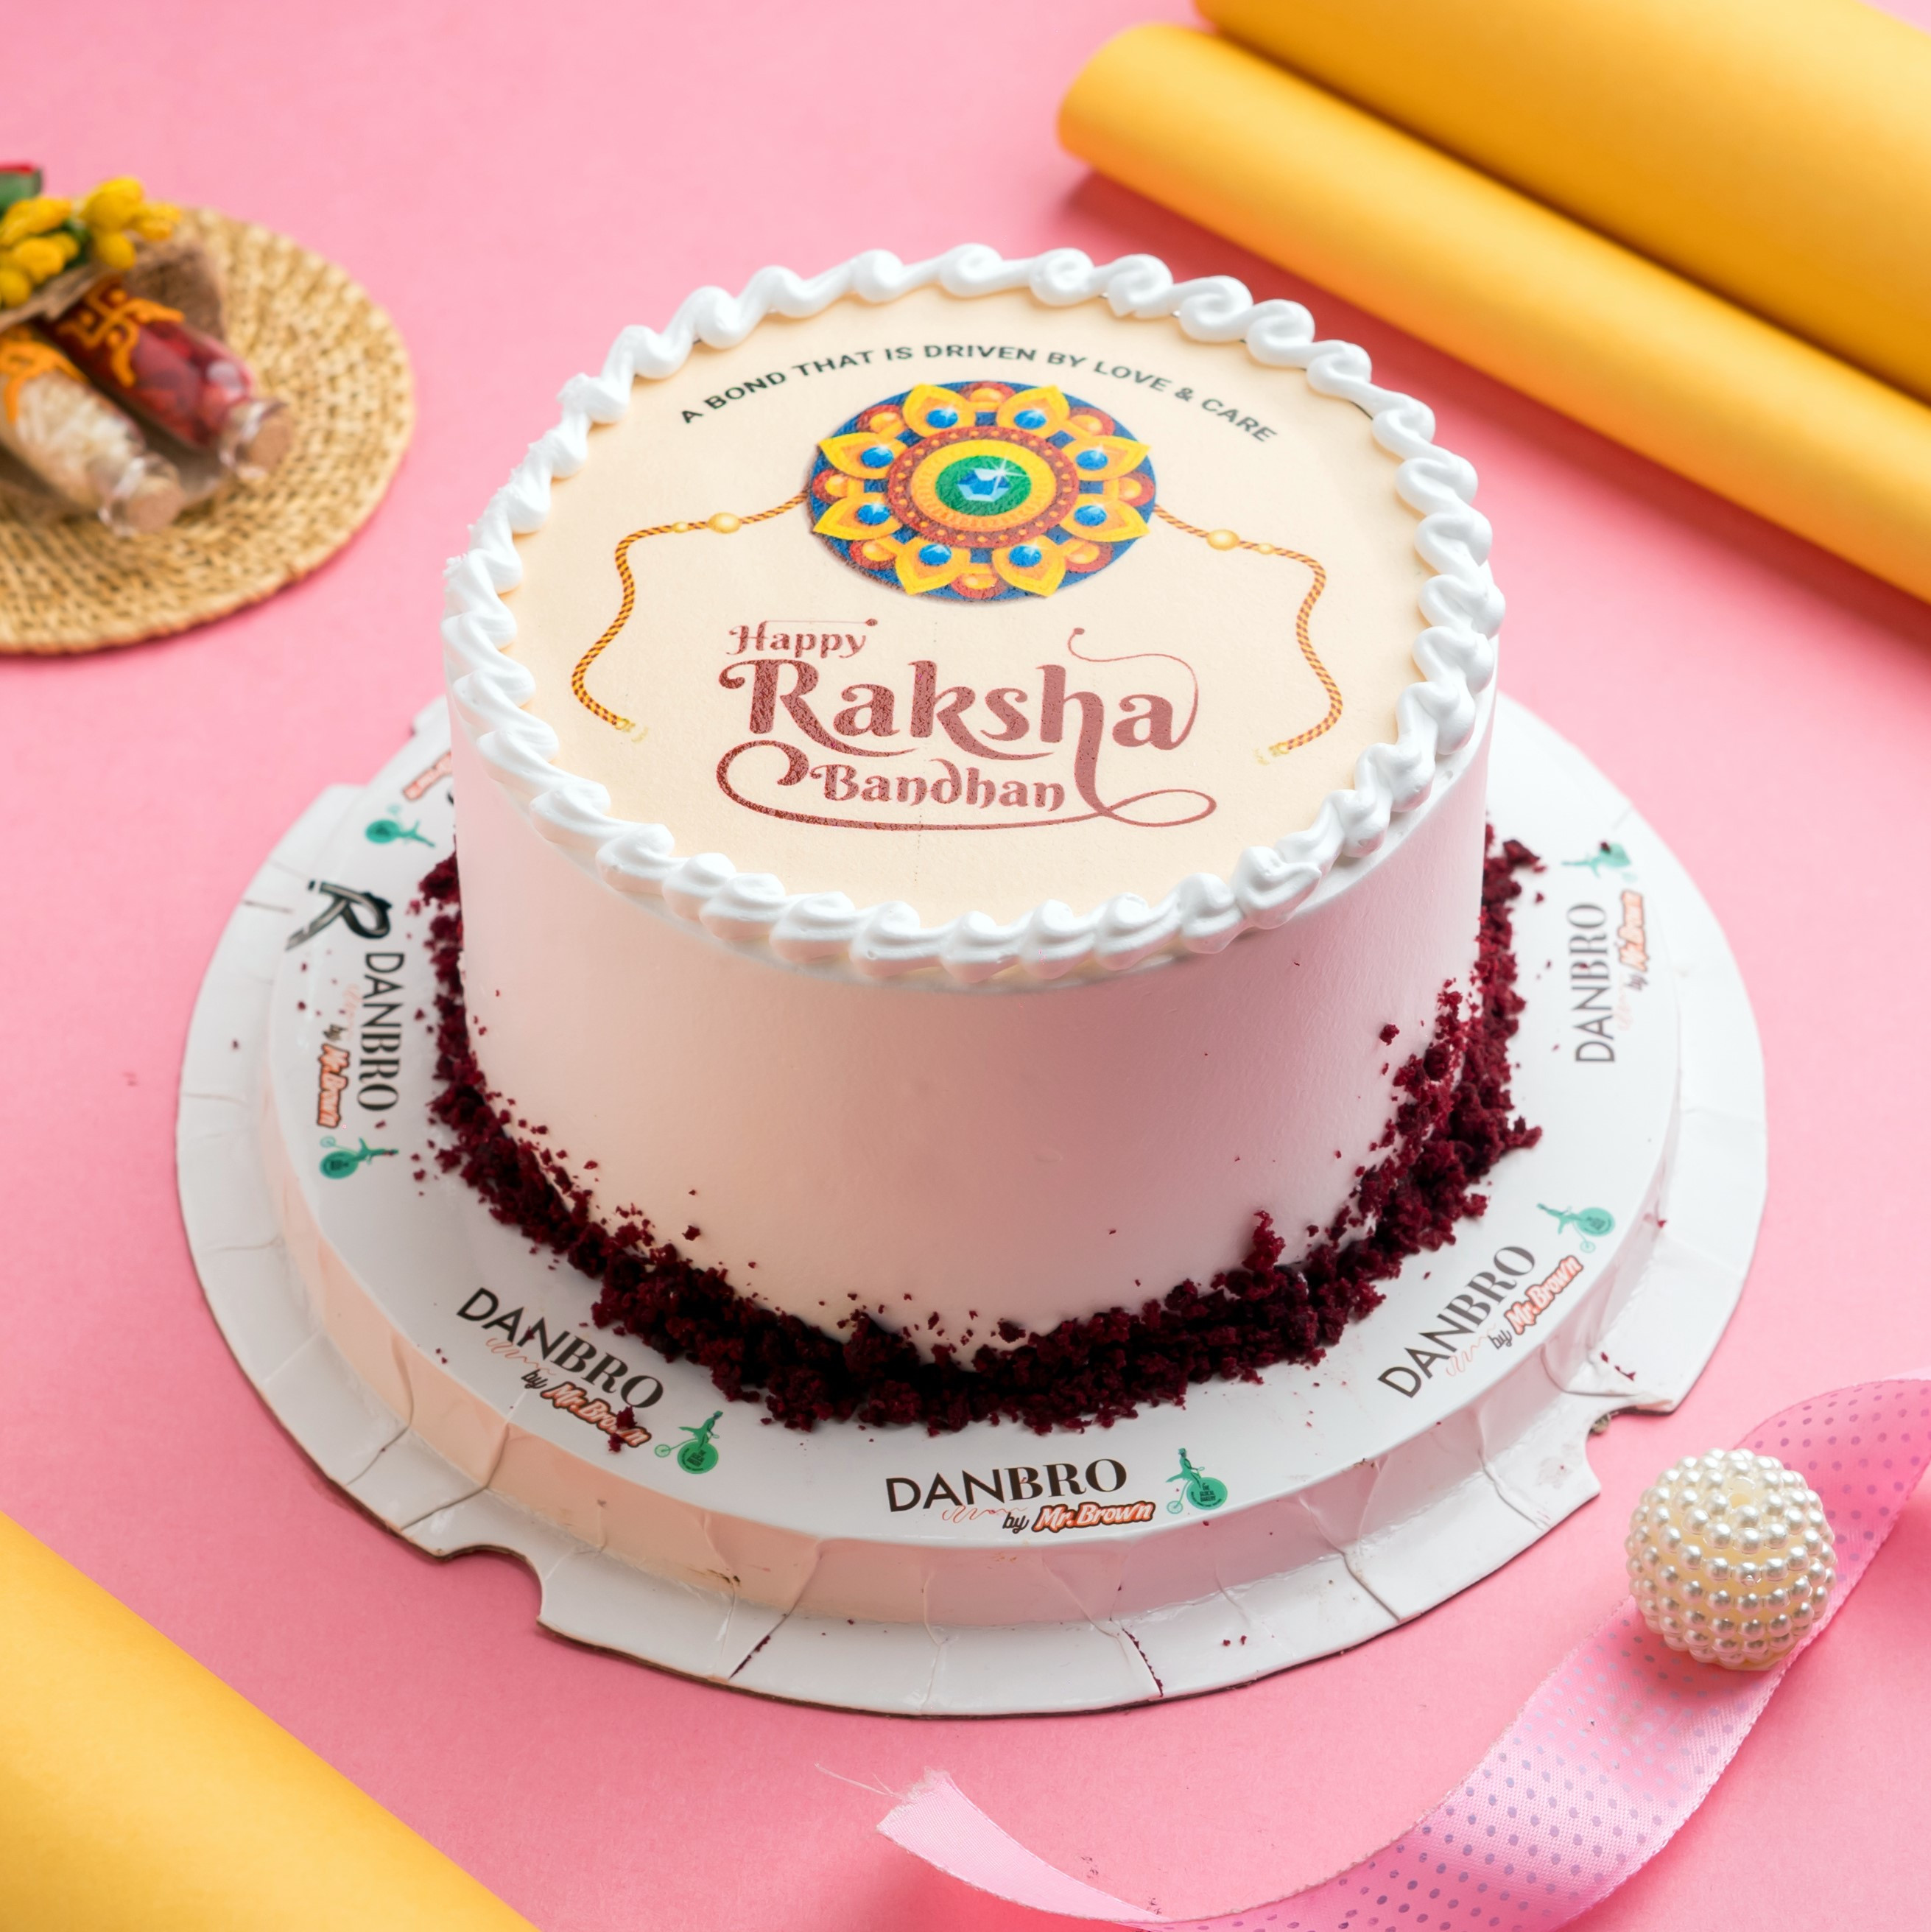 Chocolate Truffle Raksha Bandhan Cake - Your Koseli Celebrations